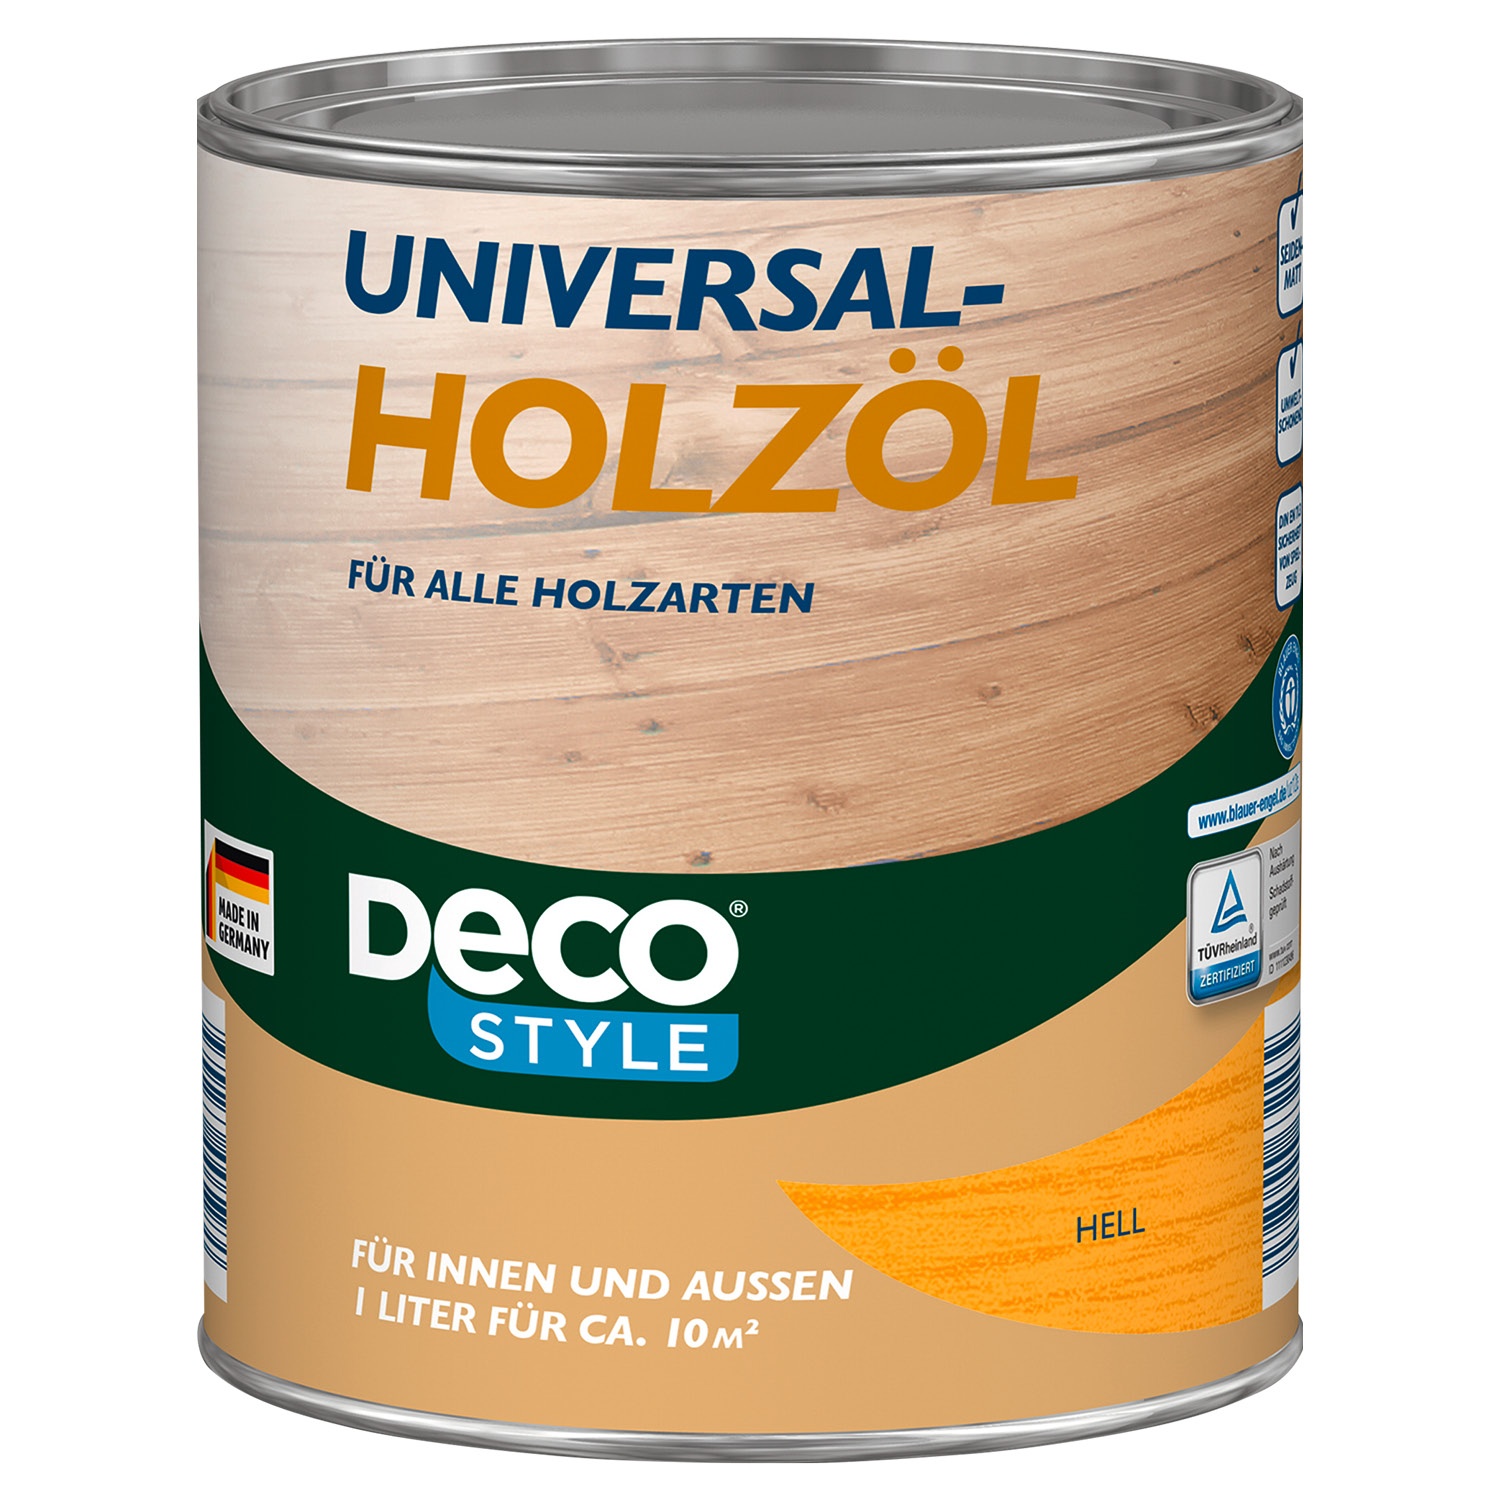 DECO STYLE® Universal-Holzöl 1 l